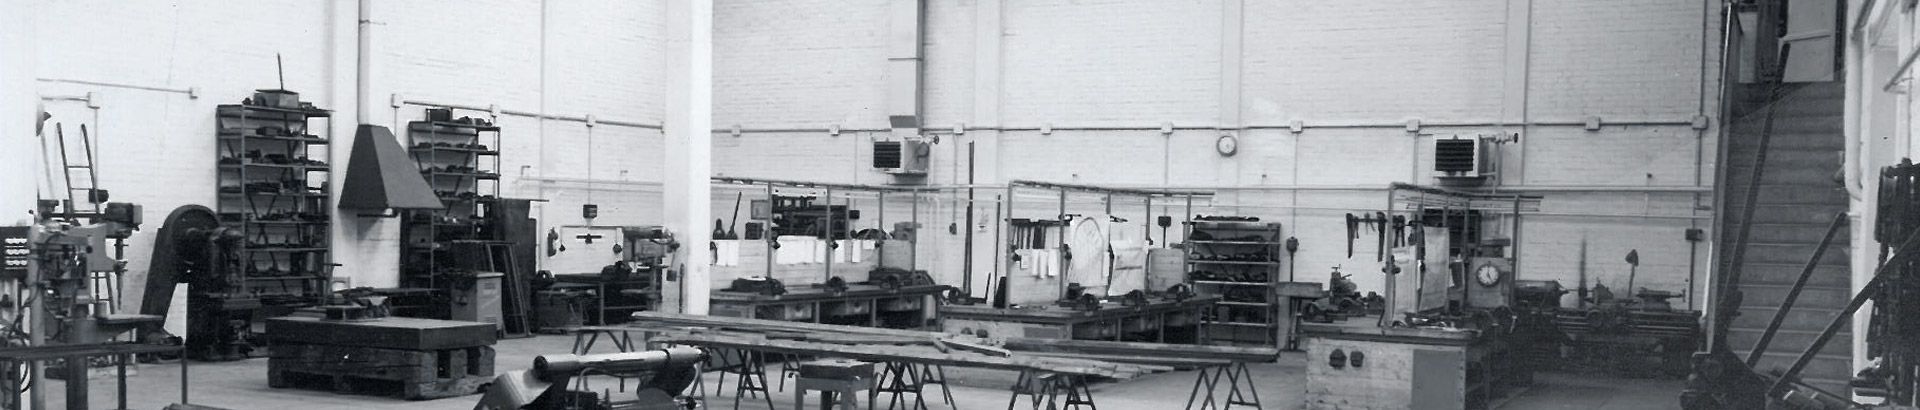 schwarz-weiße fotografie einer firmenhalle mit tischplatten aus holz